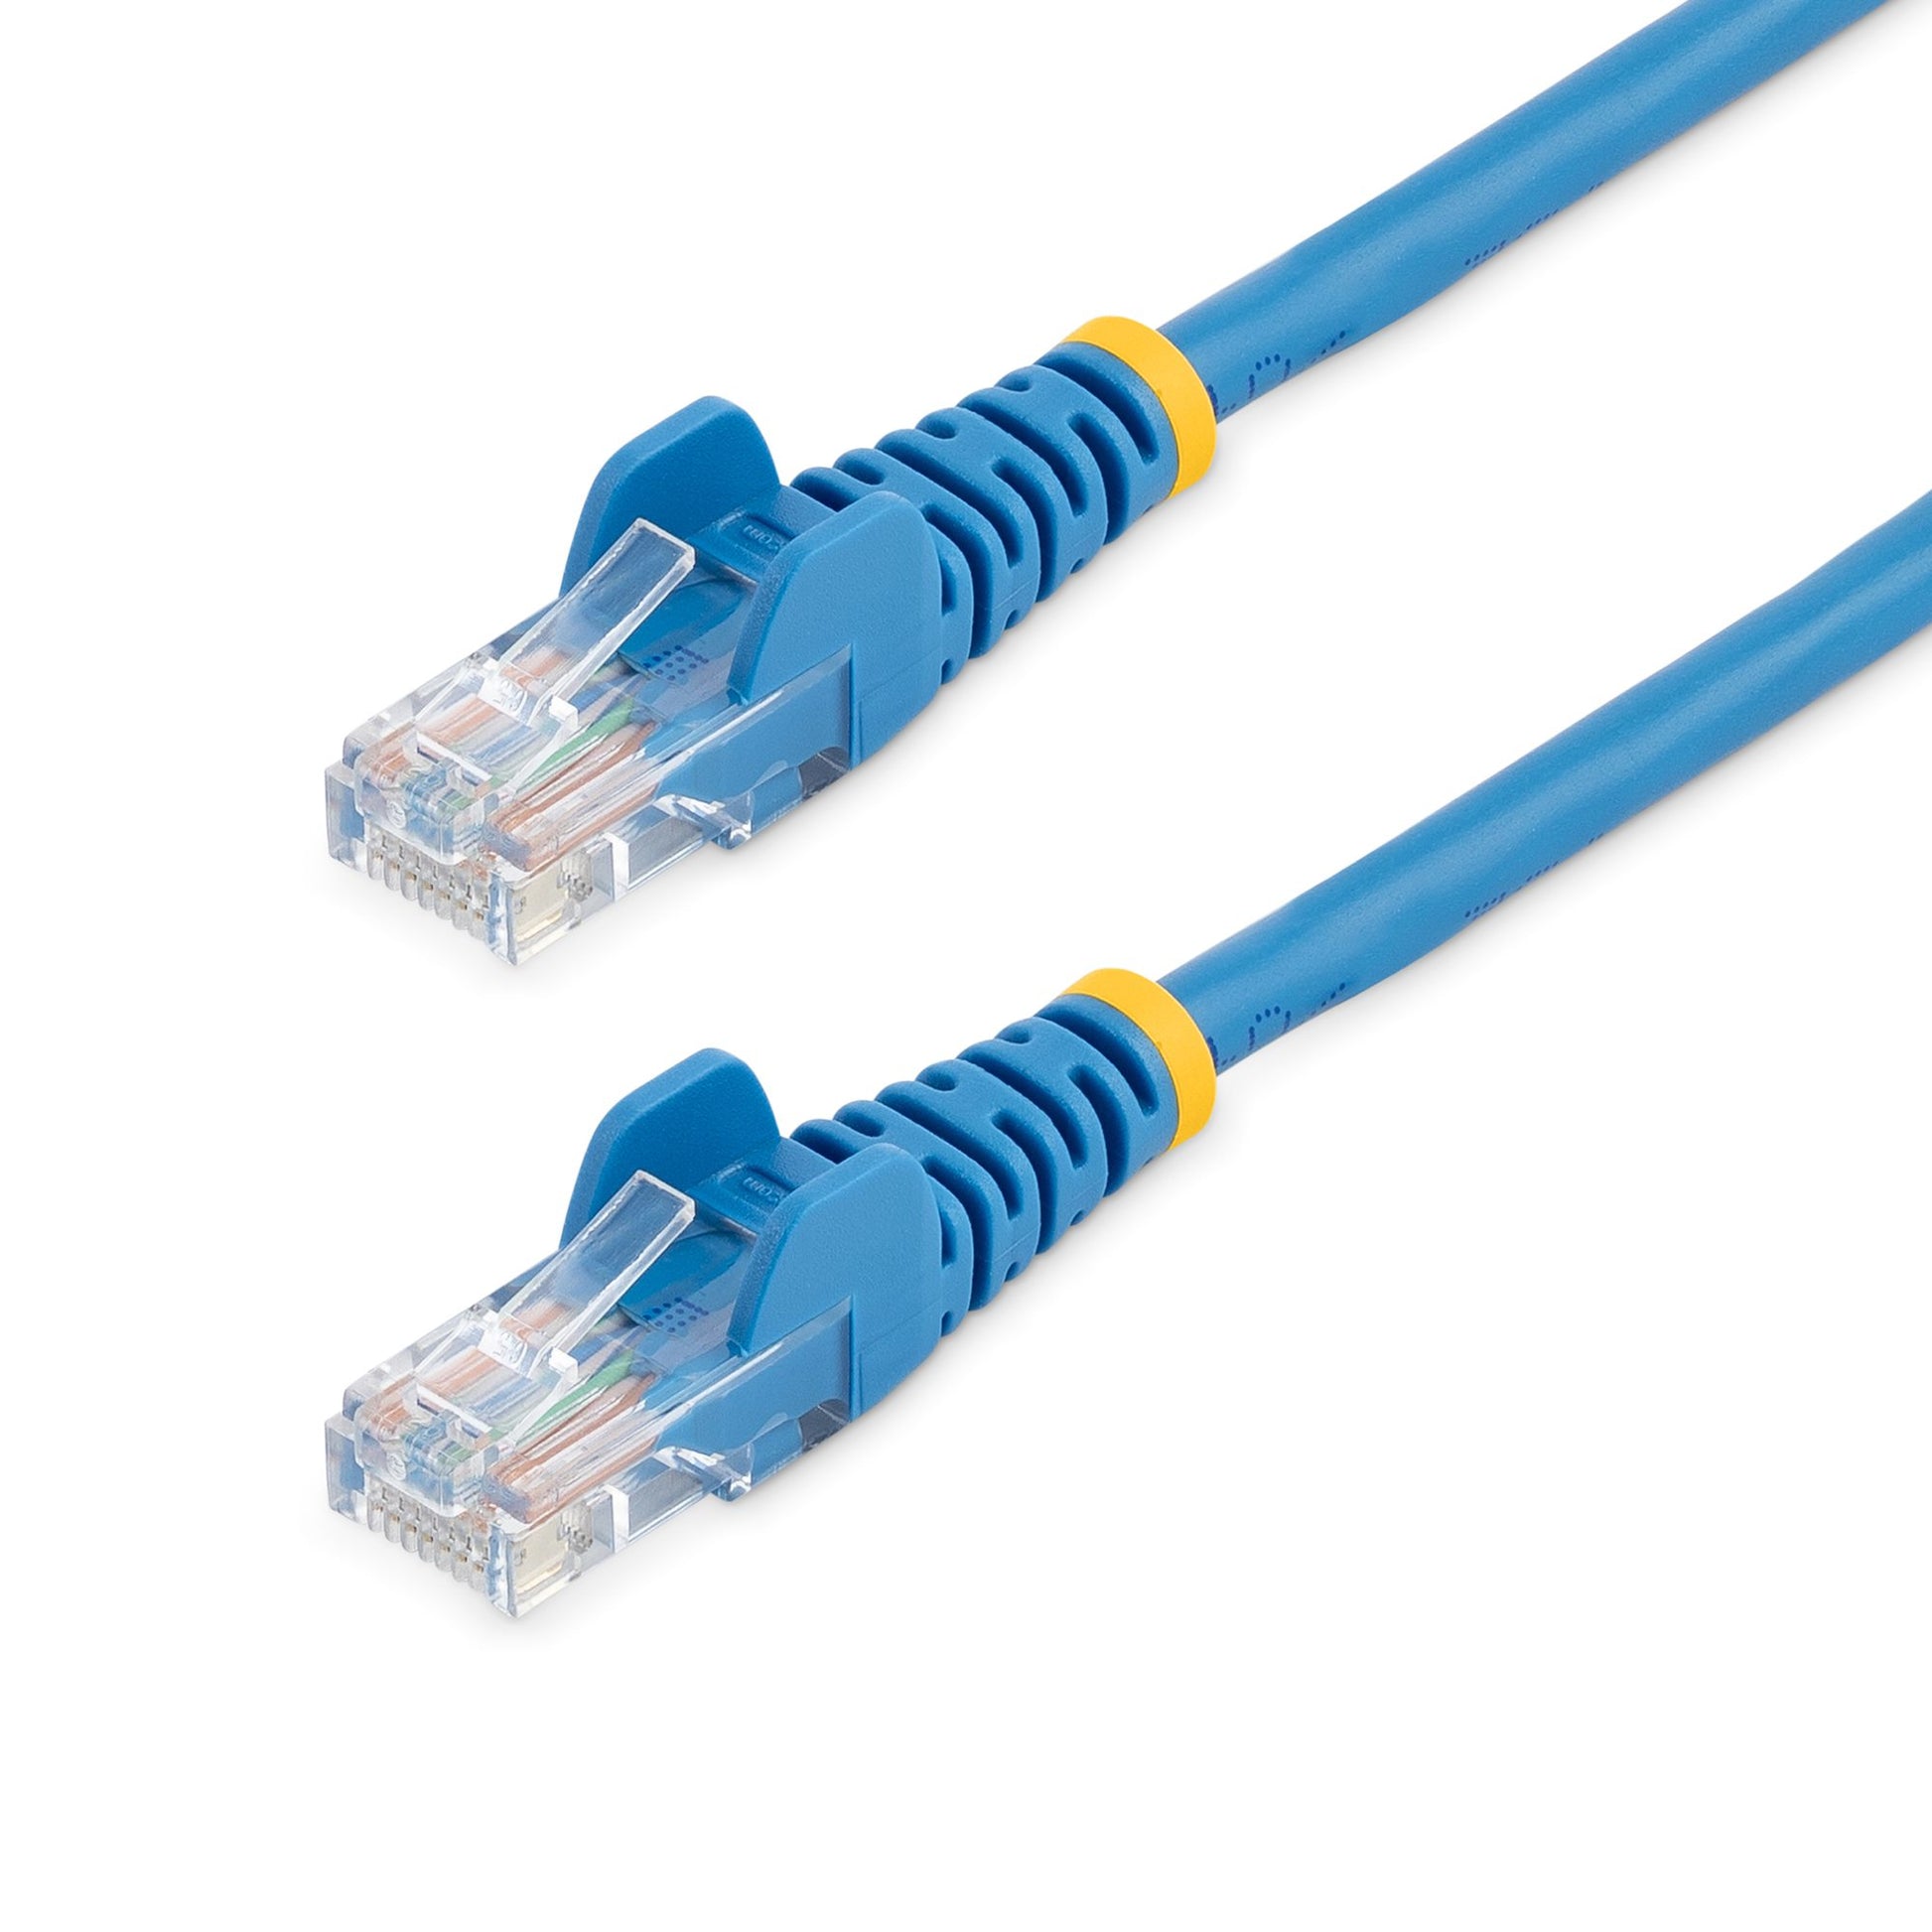 StarTech.com Cat5e Patch Cable with Snagless RJ45 Connectors - 1m, Blue-0